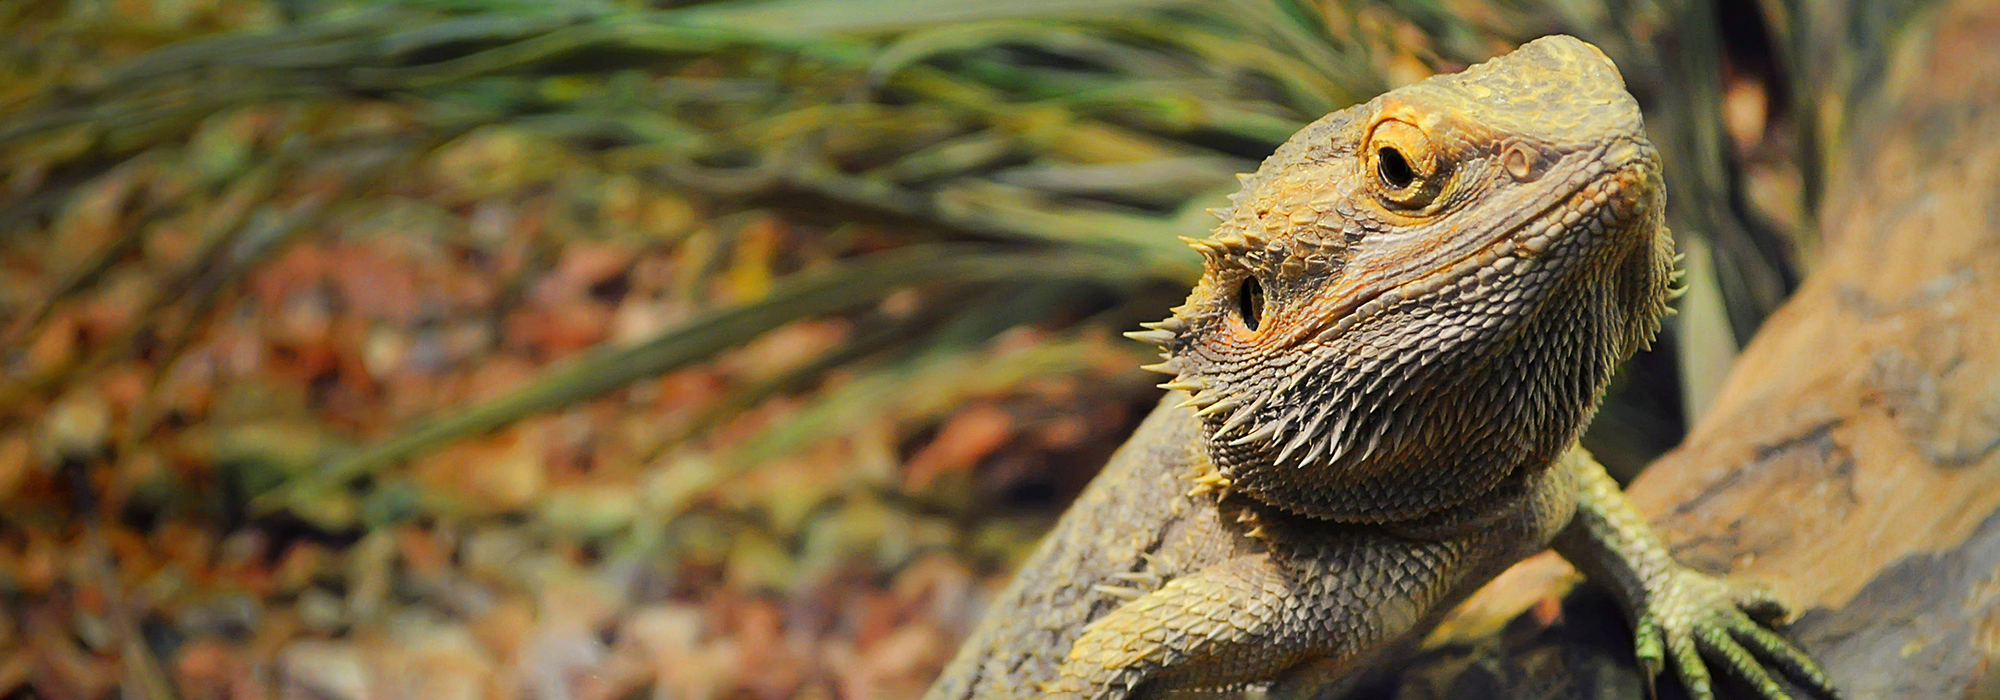 A bearded dragon lizard in a terrarium